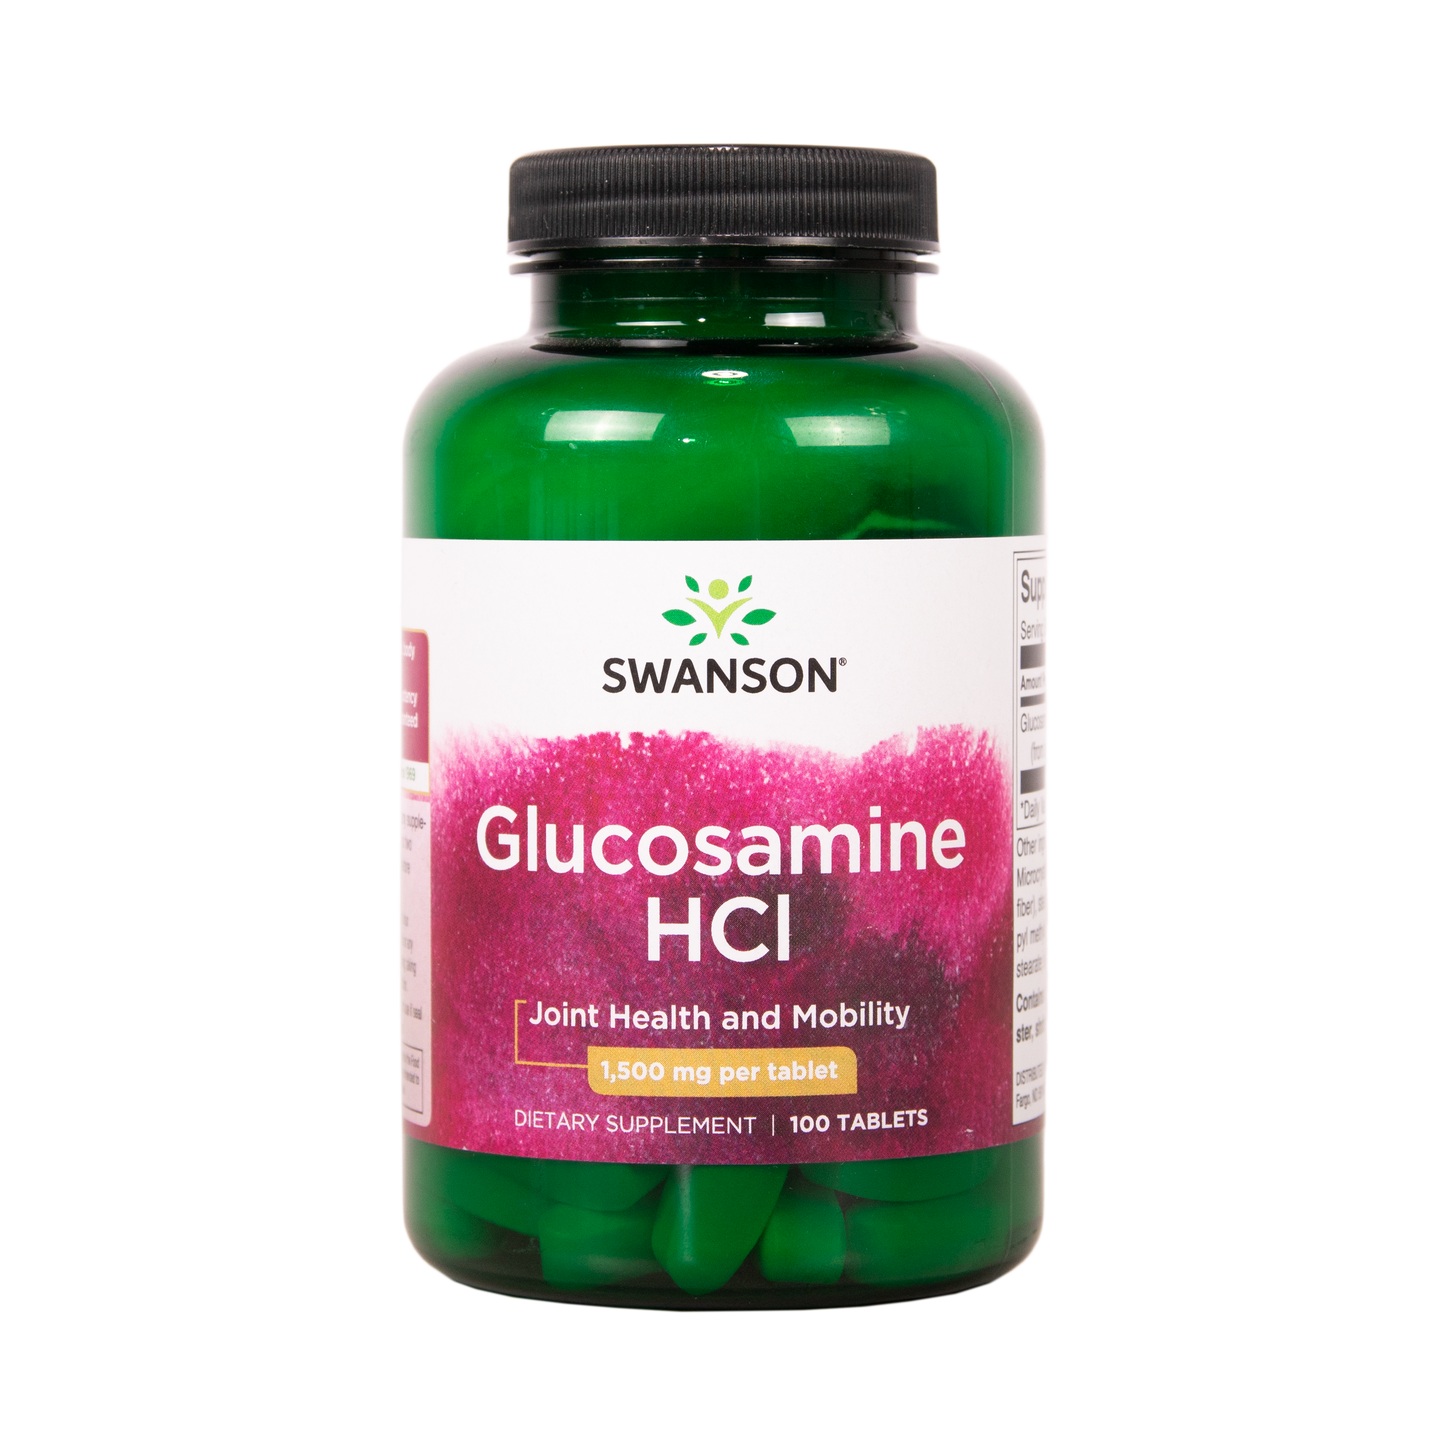 SWANSON Glukosamiinihydrokloridi 1500 mg 100 tablettia w2w terveys ja hyvinvointi verkkokauppa